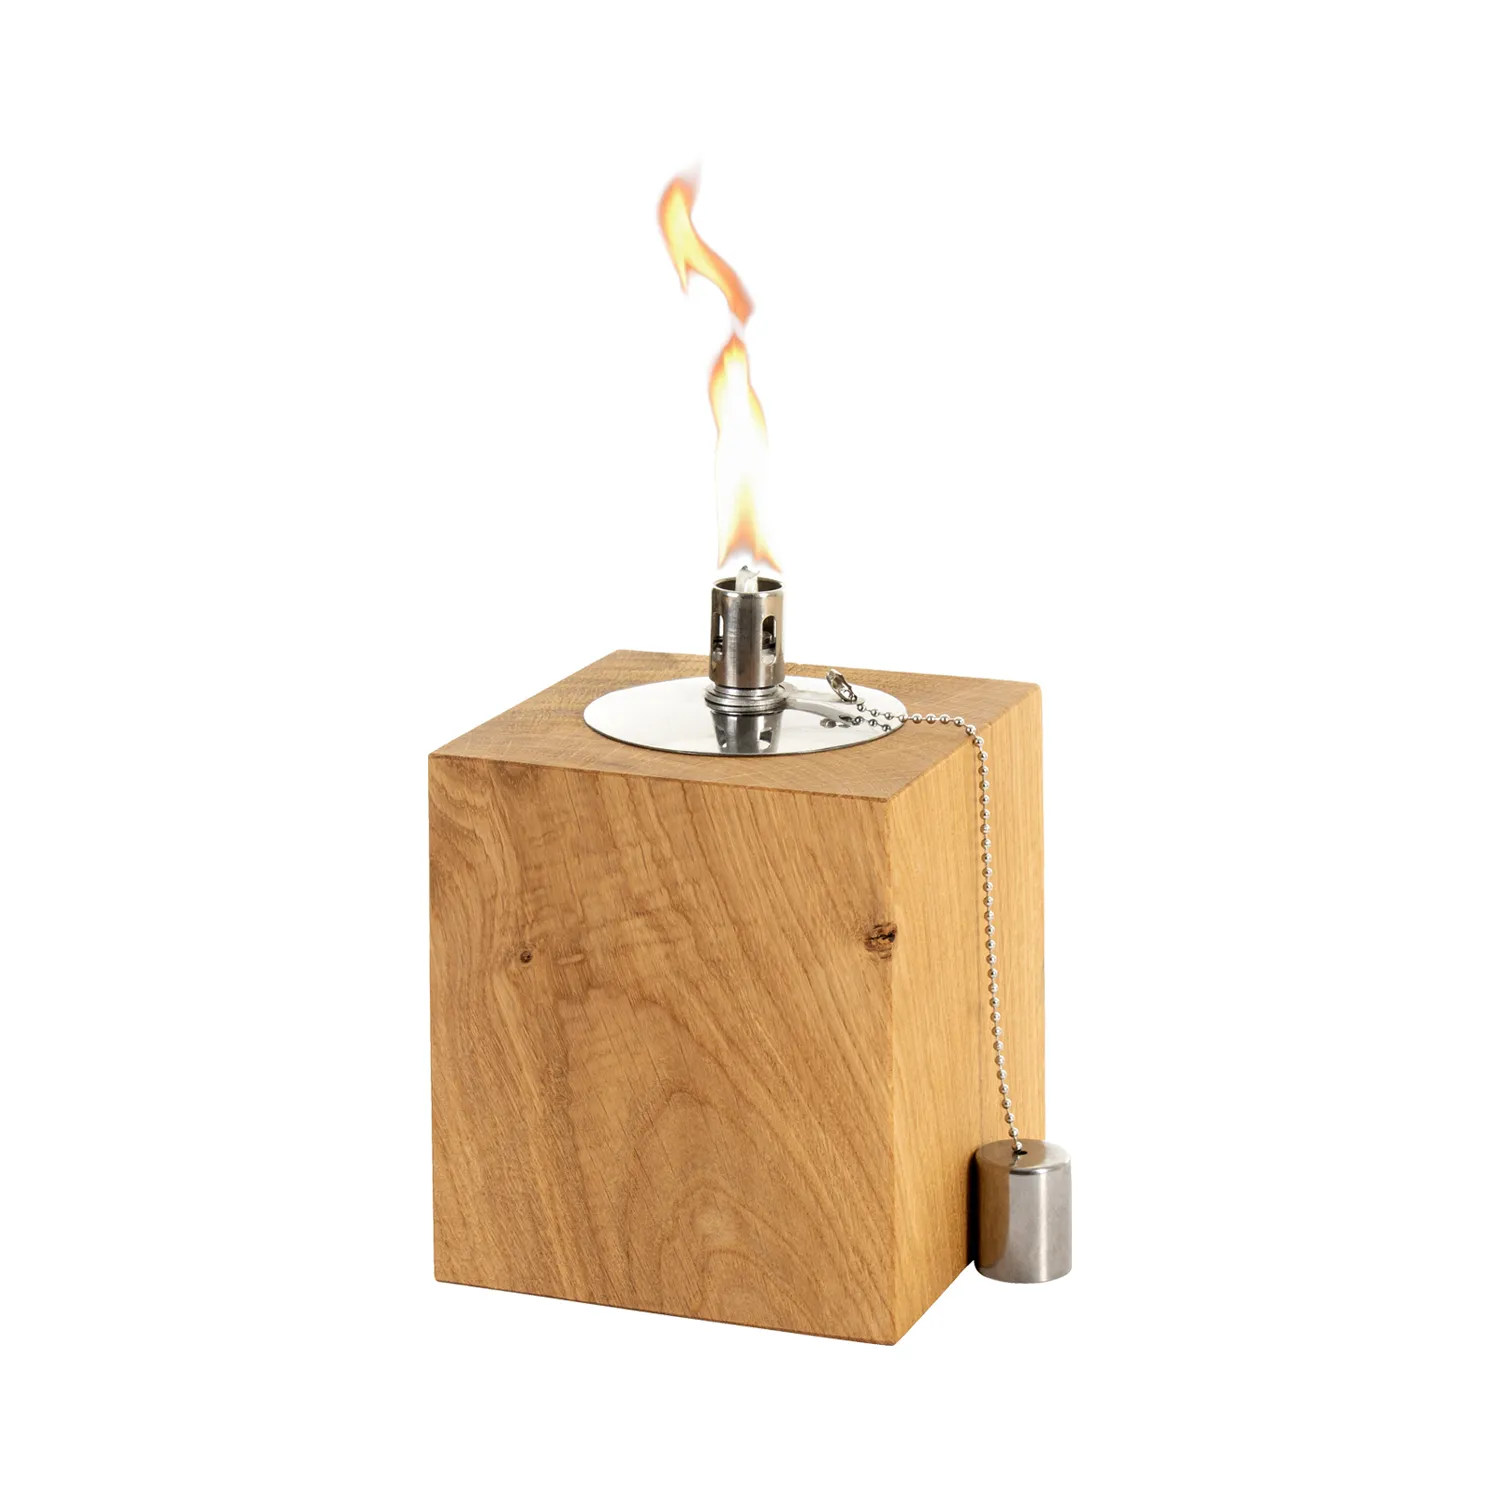 Tischfackel aus kleinem Block aus massivem Holz mit Flamme